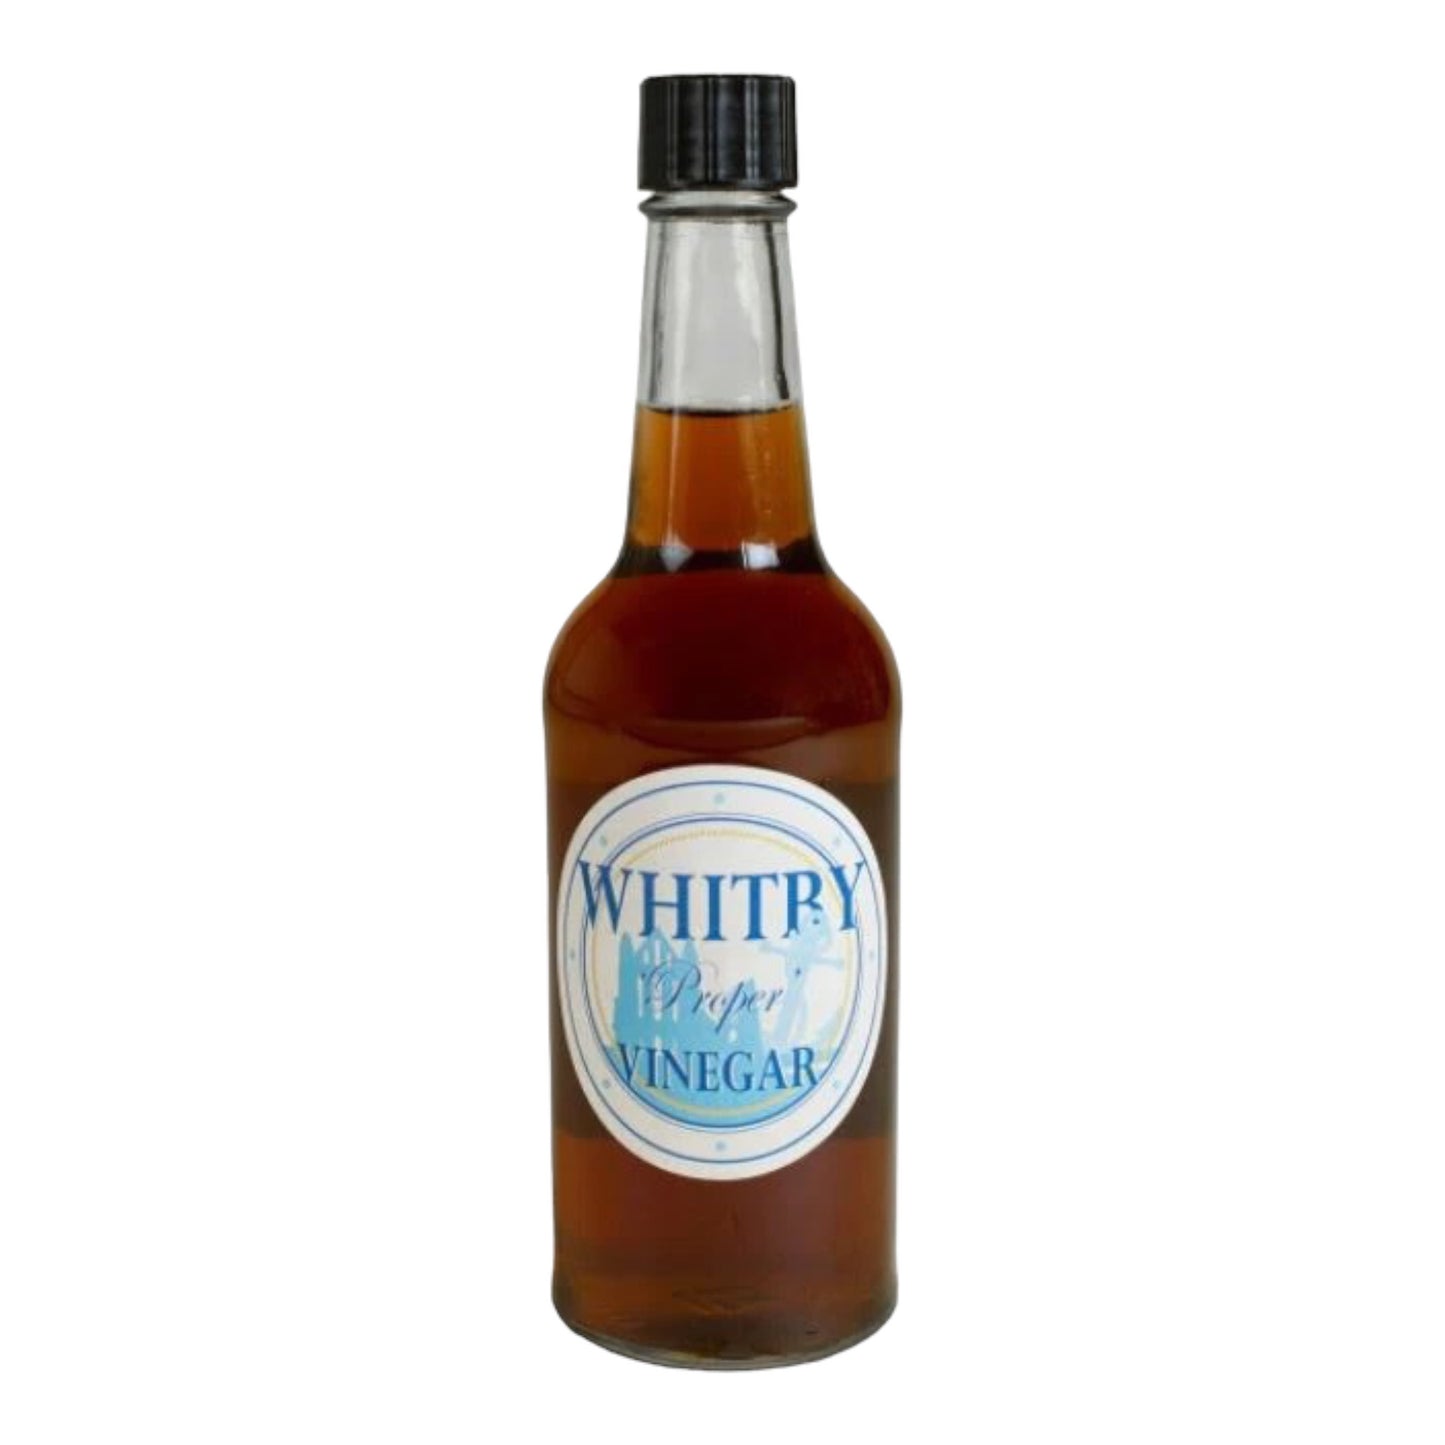 Whitby Proper Vinegar